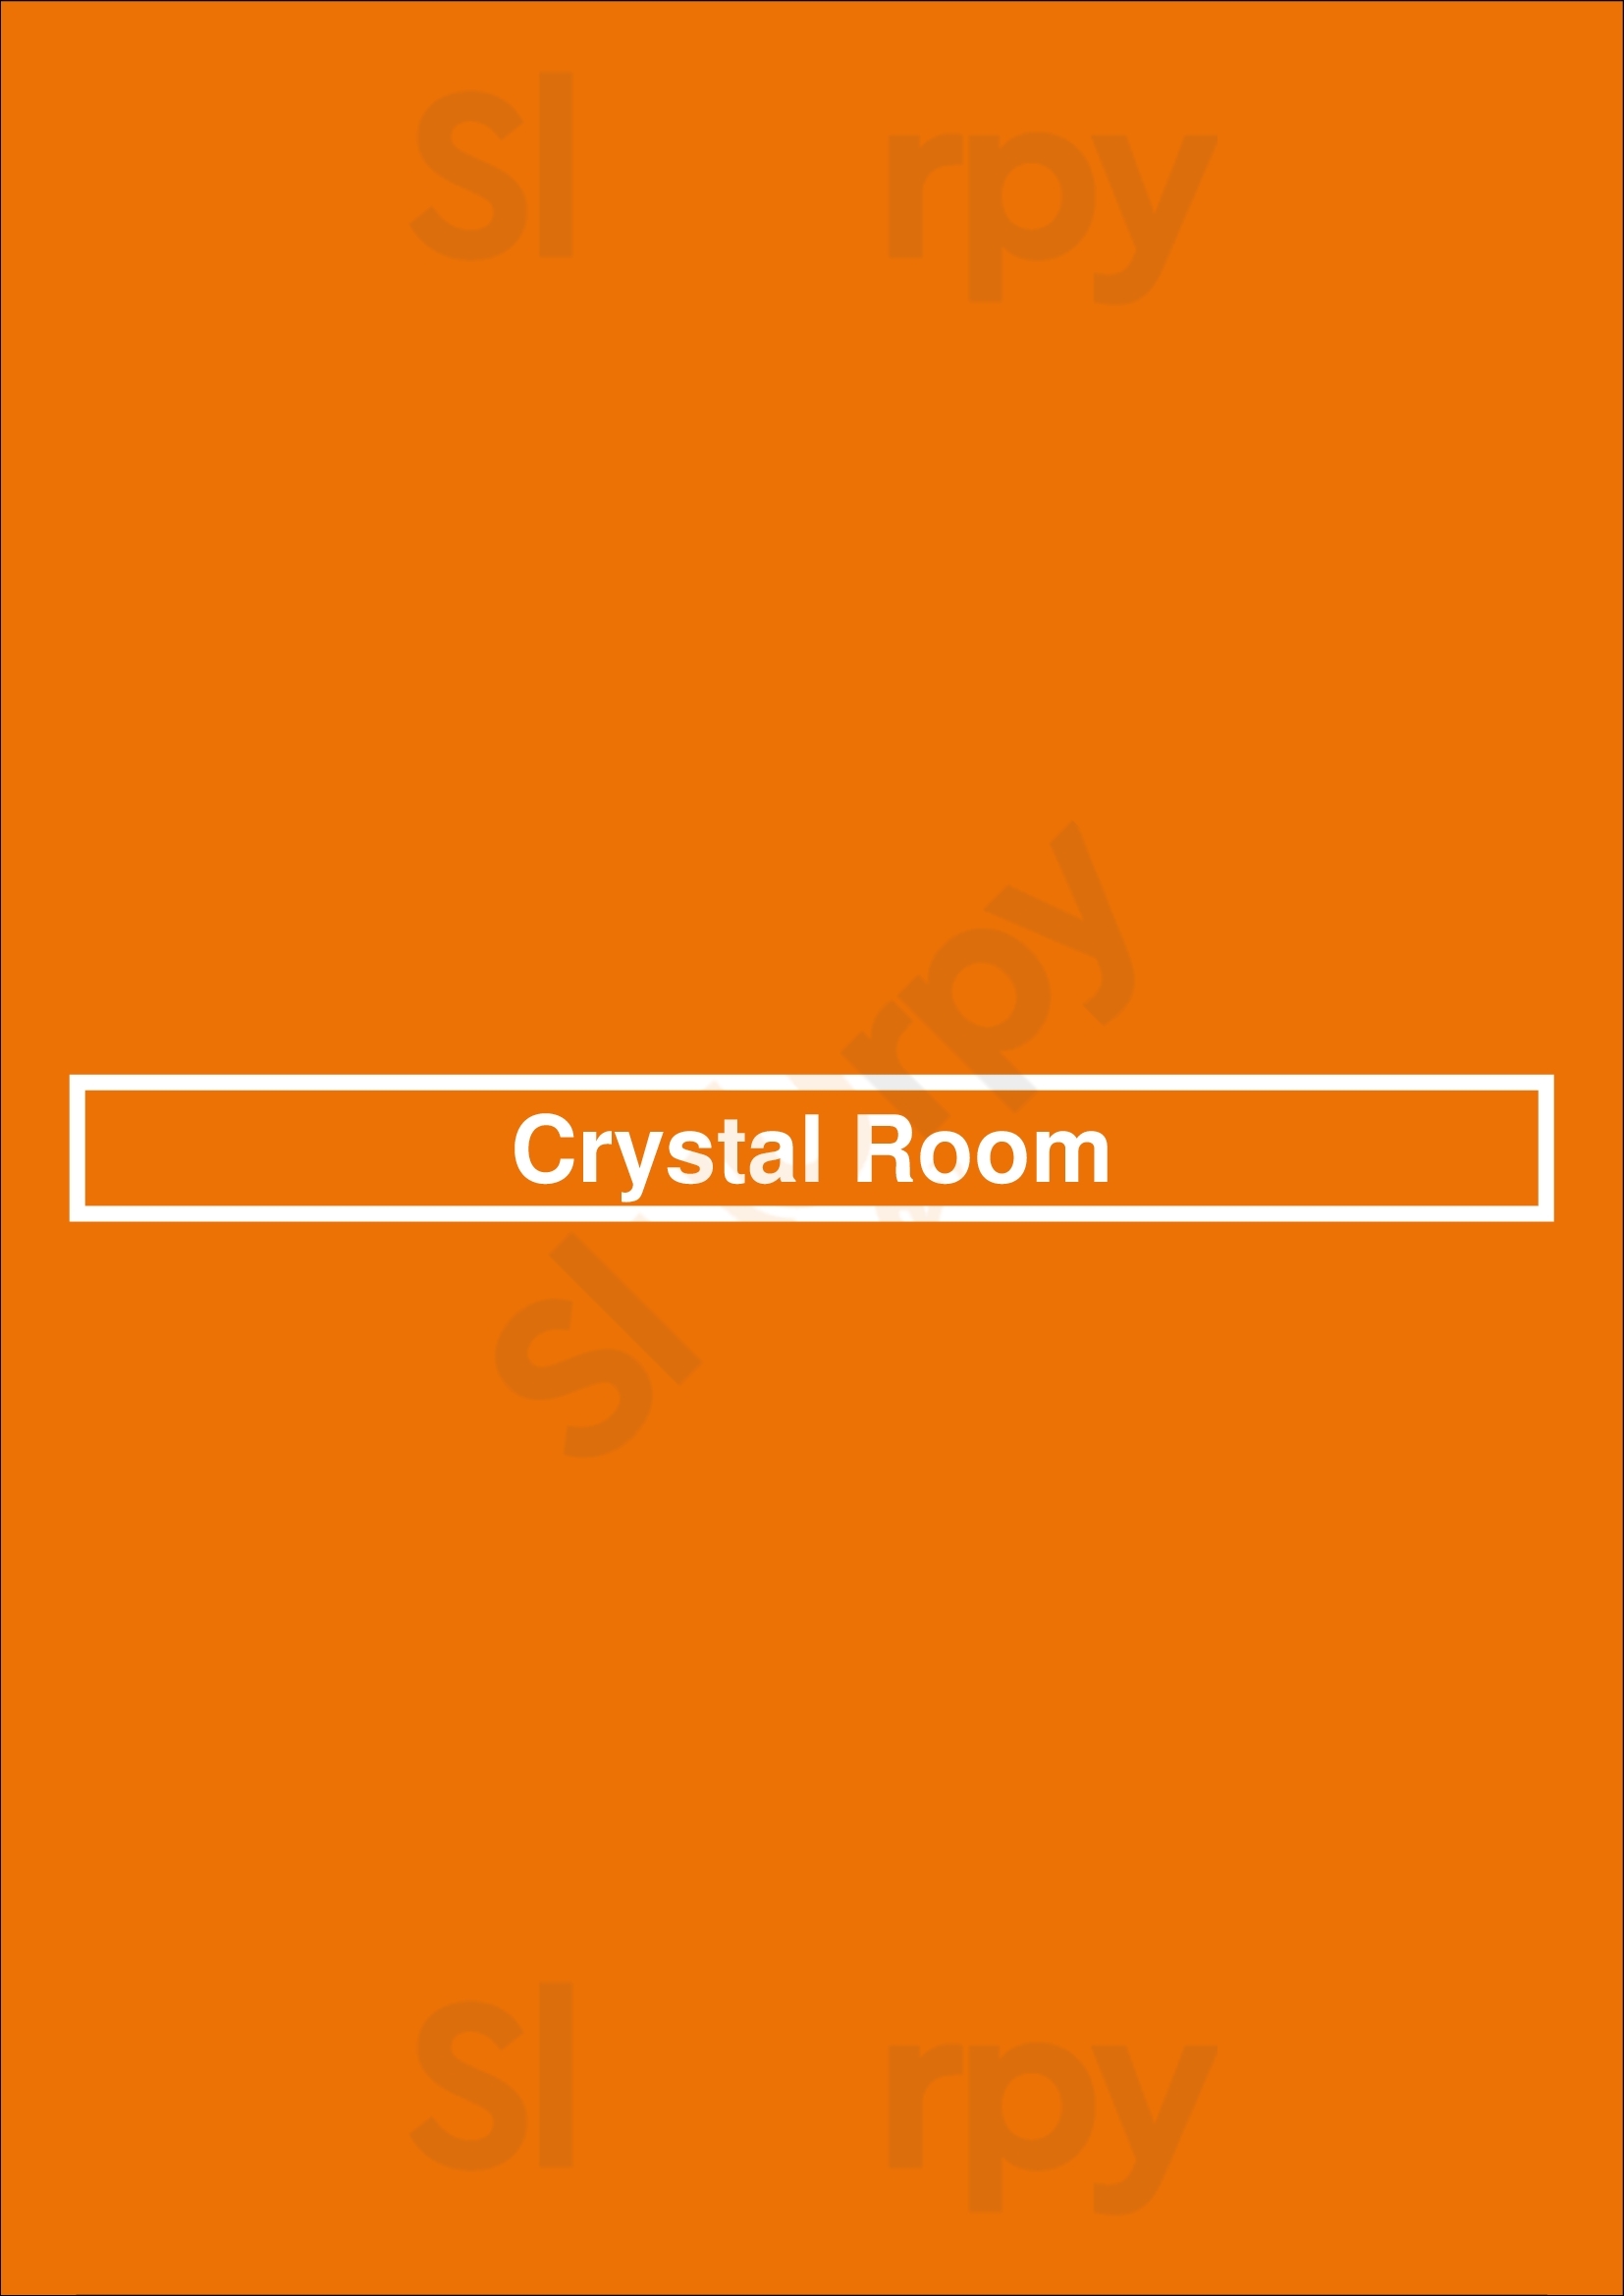 Crystal Room Bedford Menu - 1